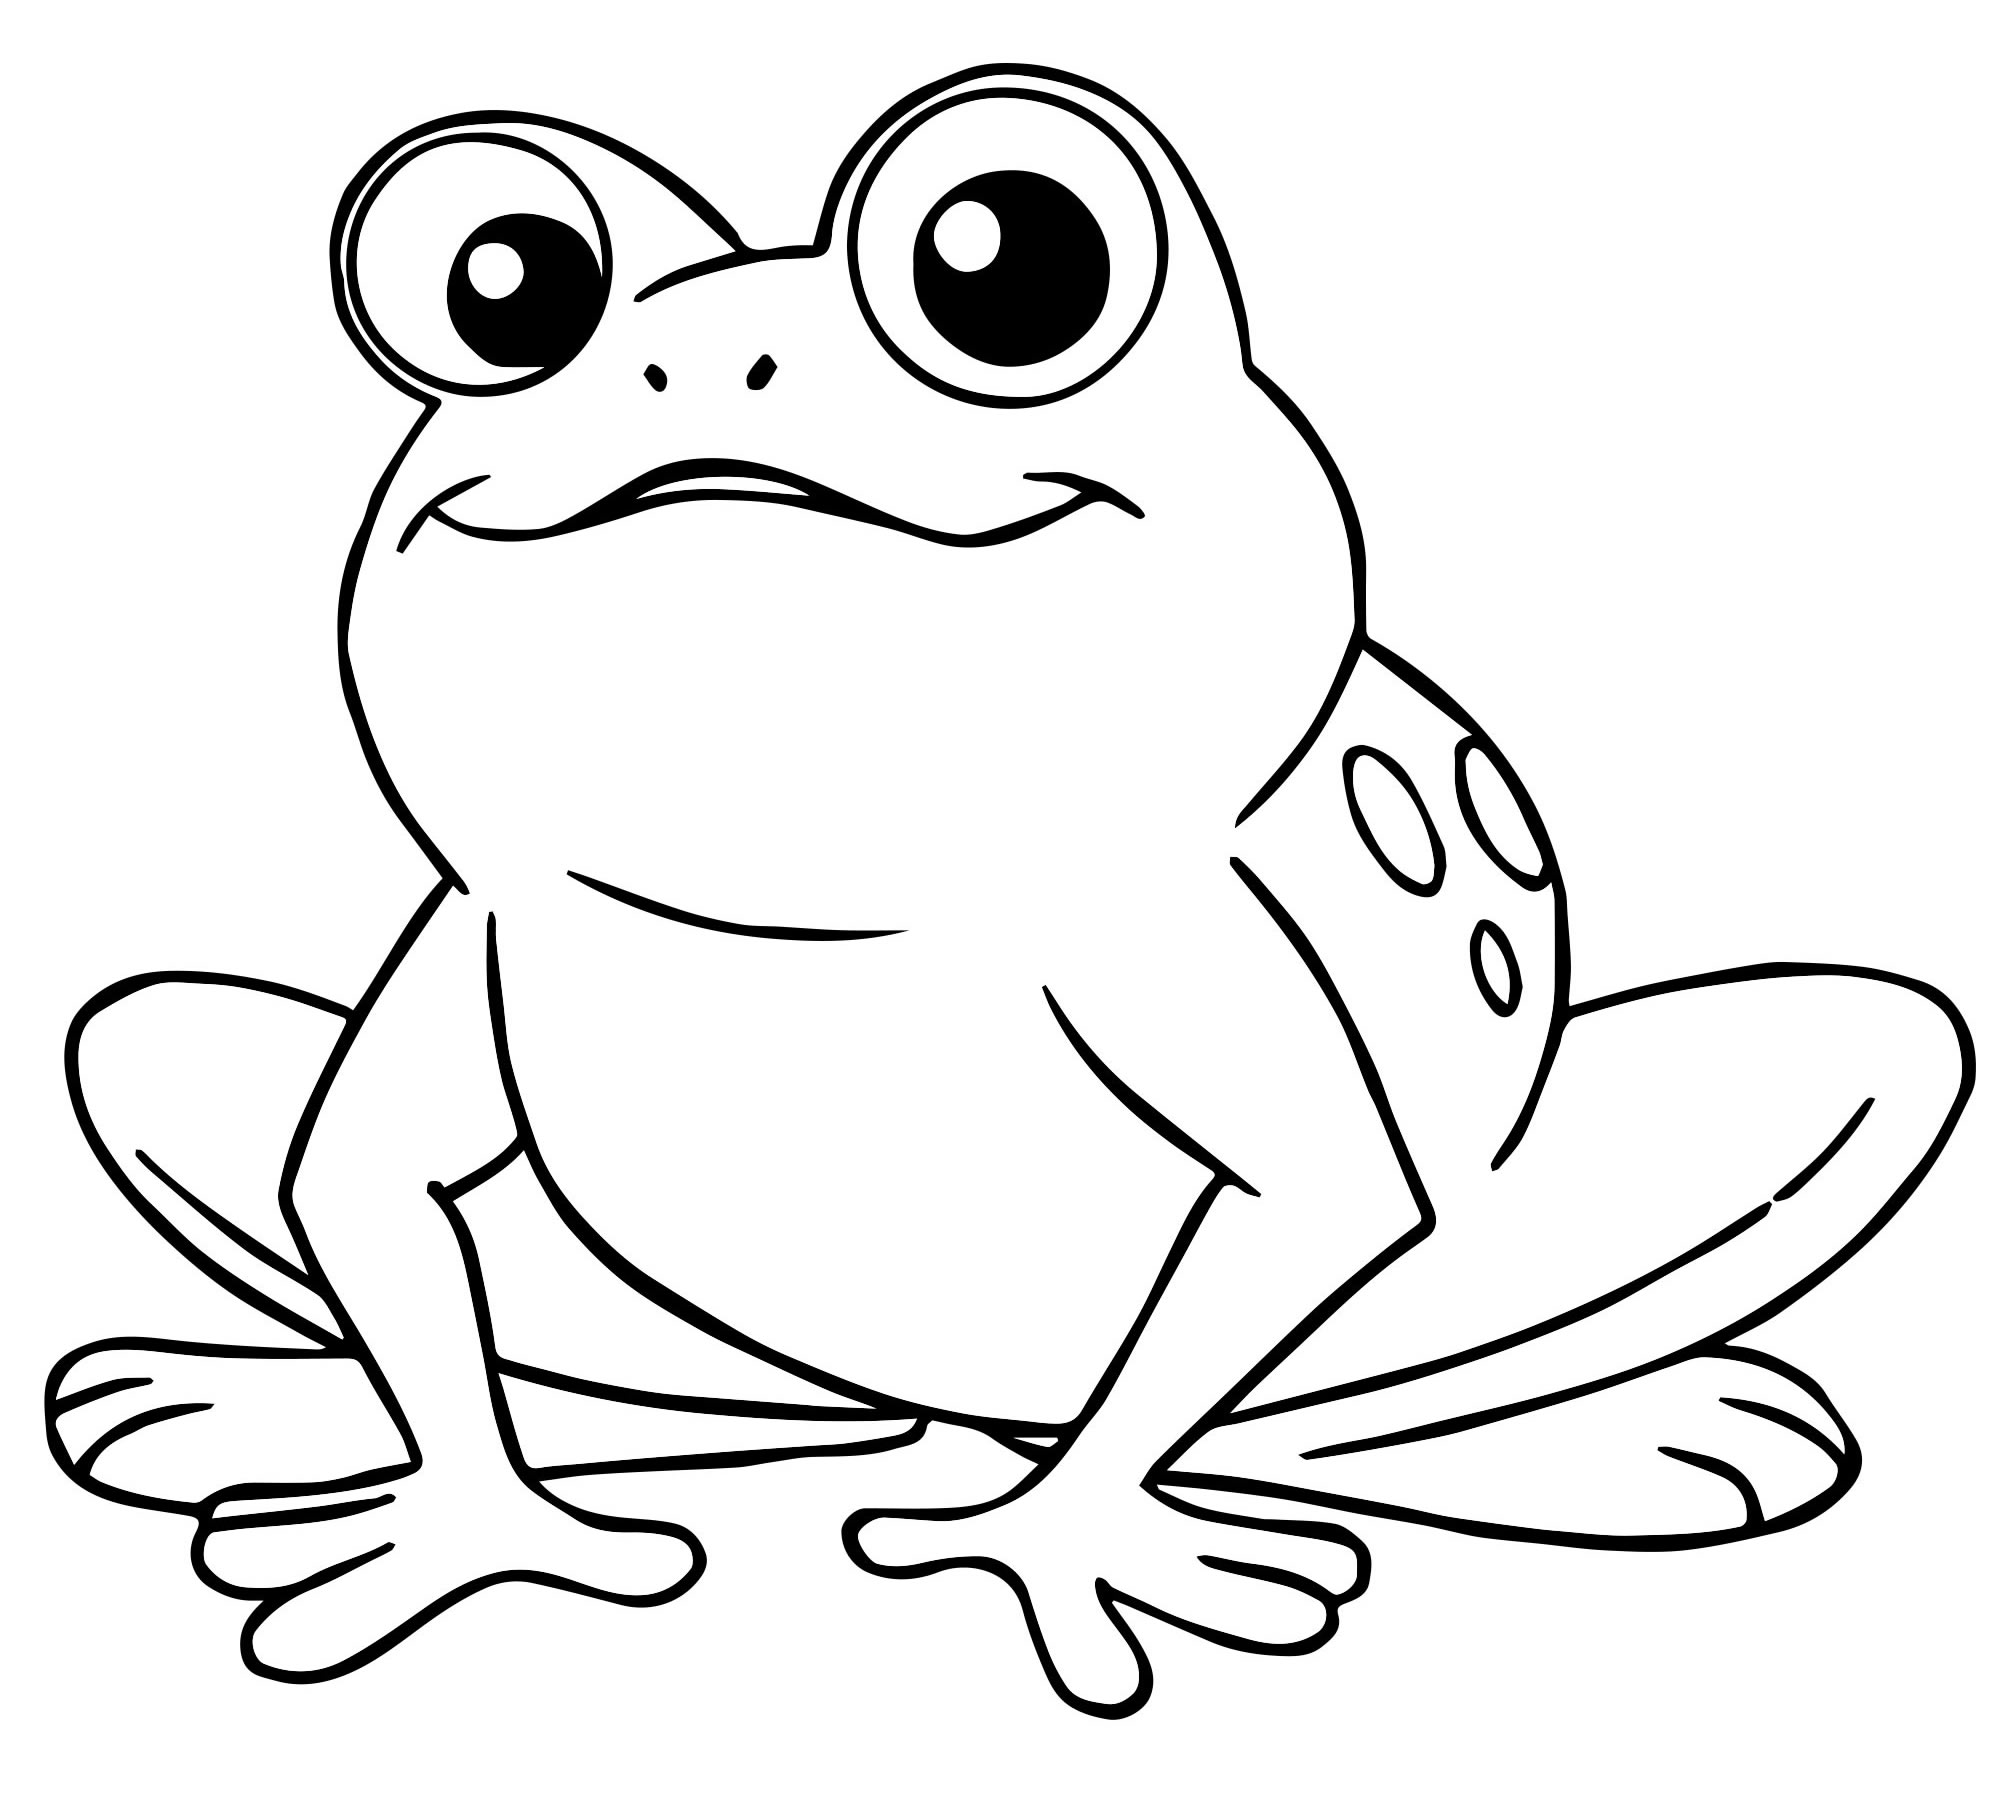 Раскраска маленькая жаба распечатать